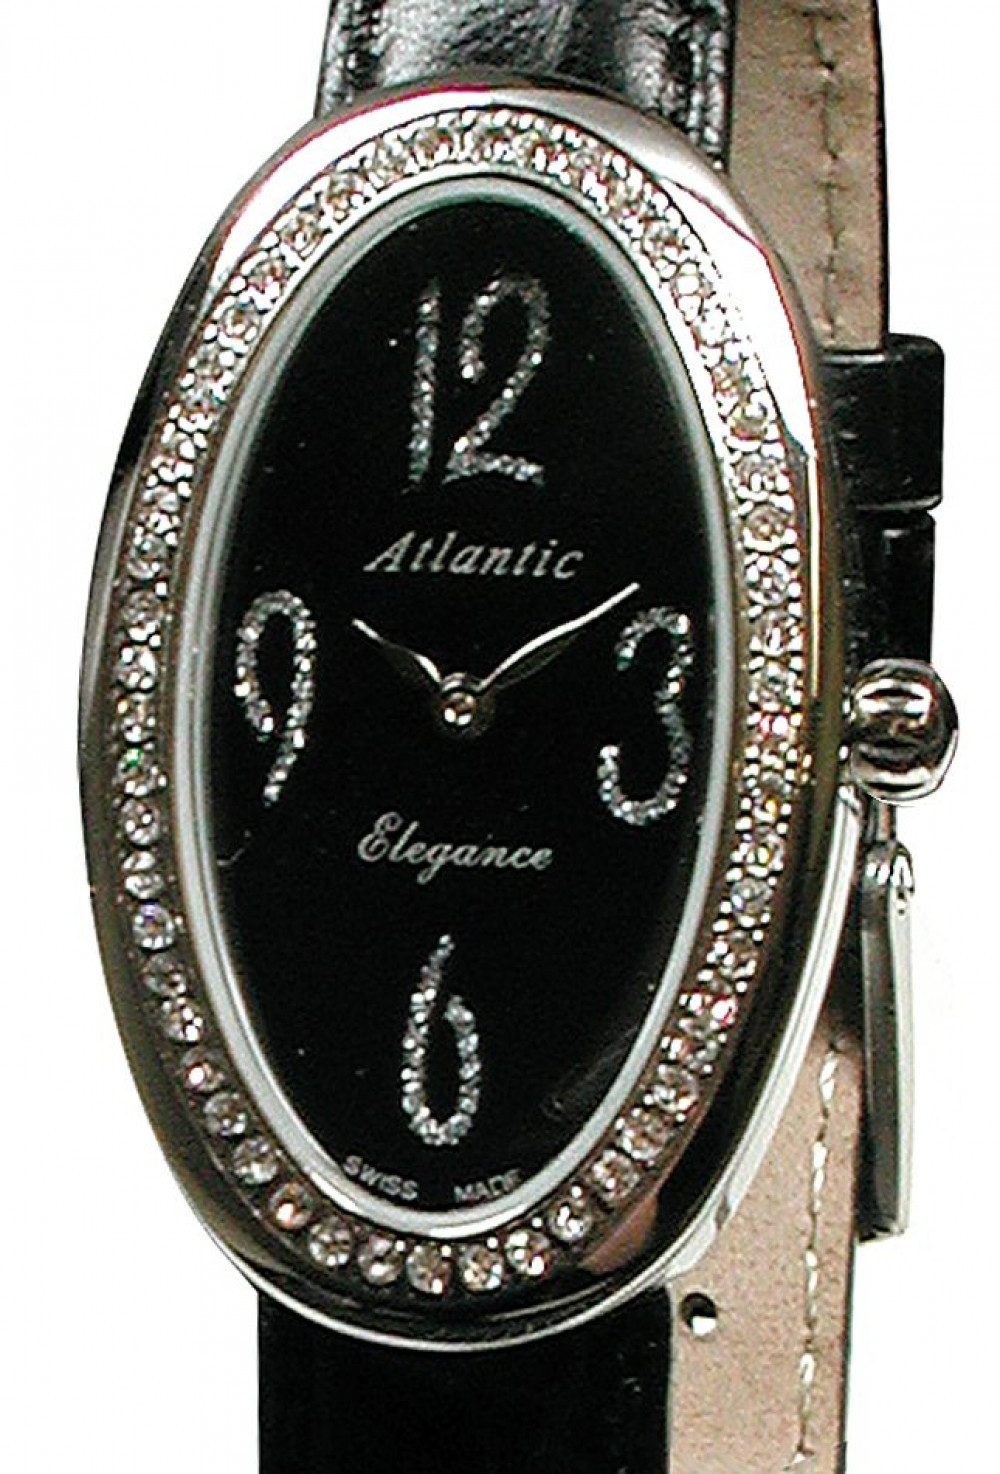 Zegarek firmy Atlantic, model Elegance Oval